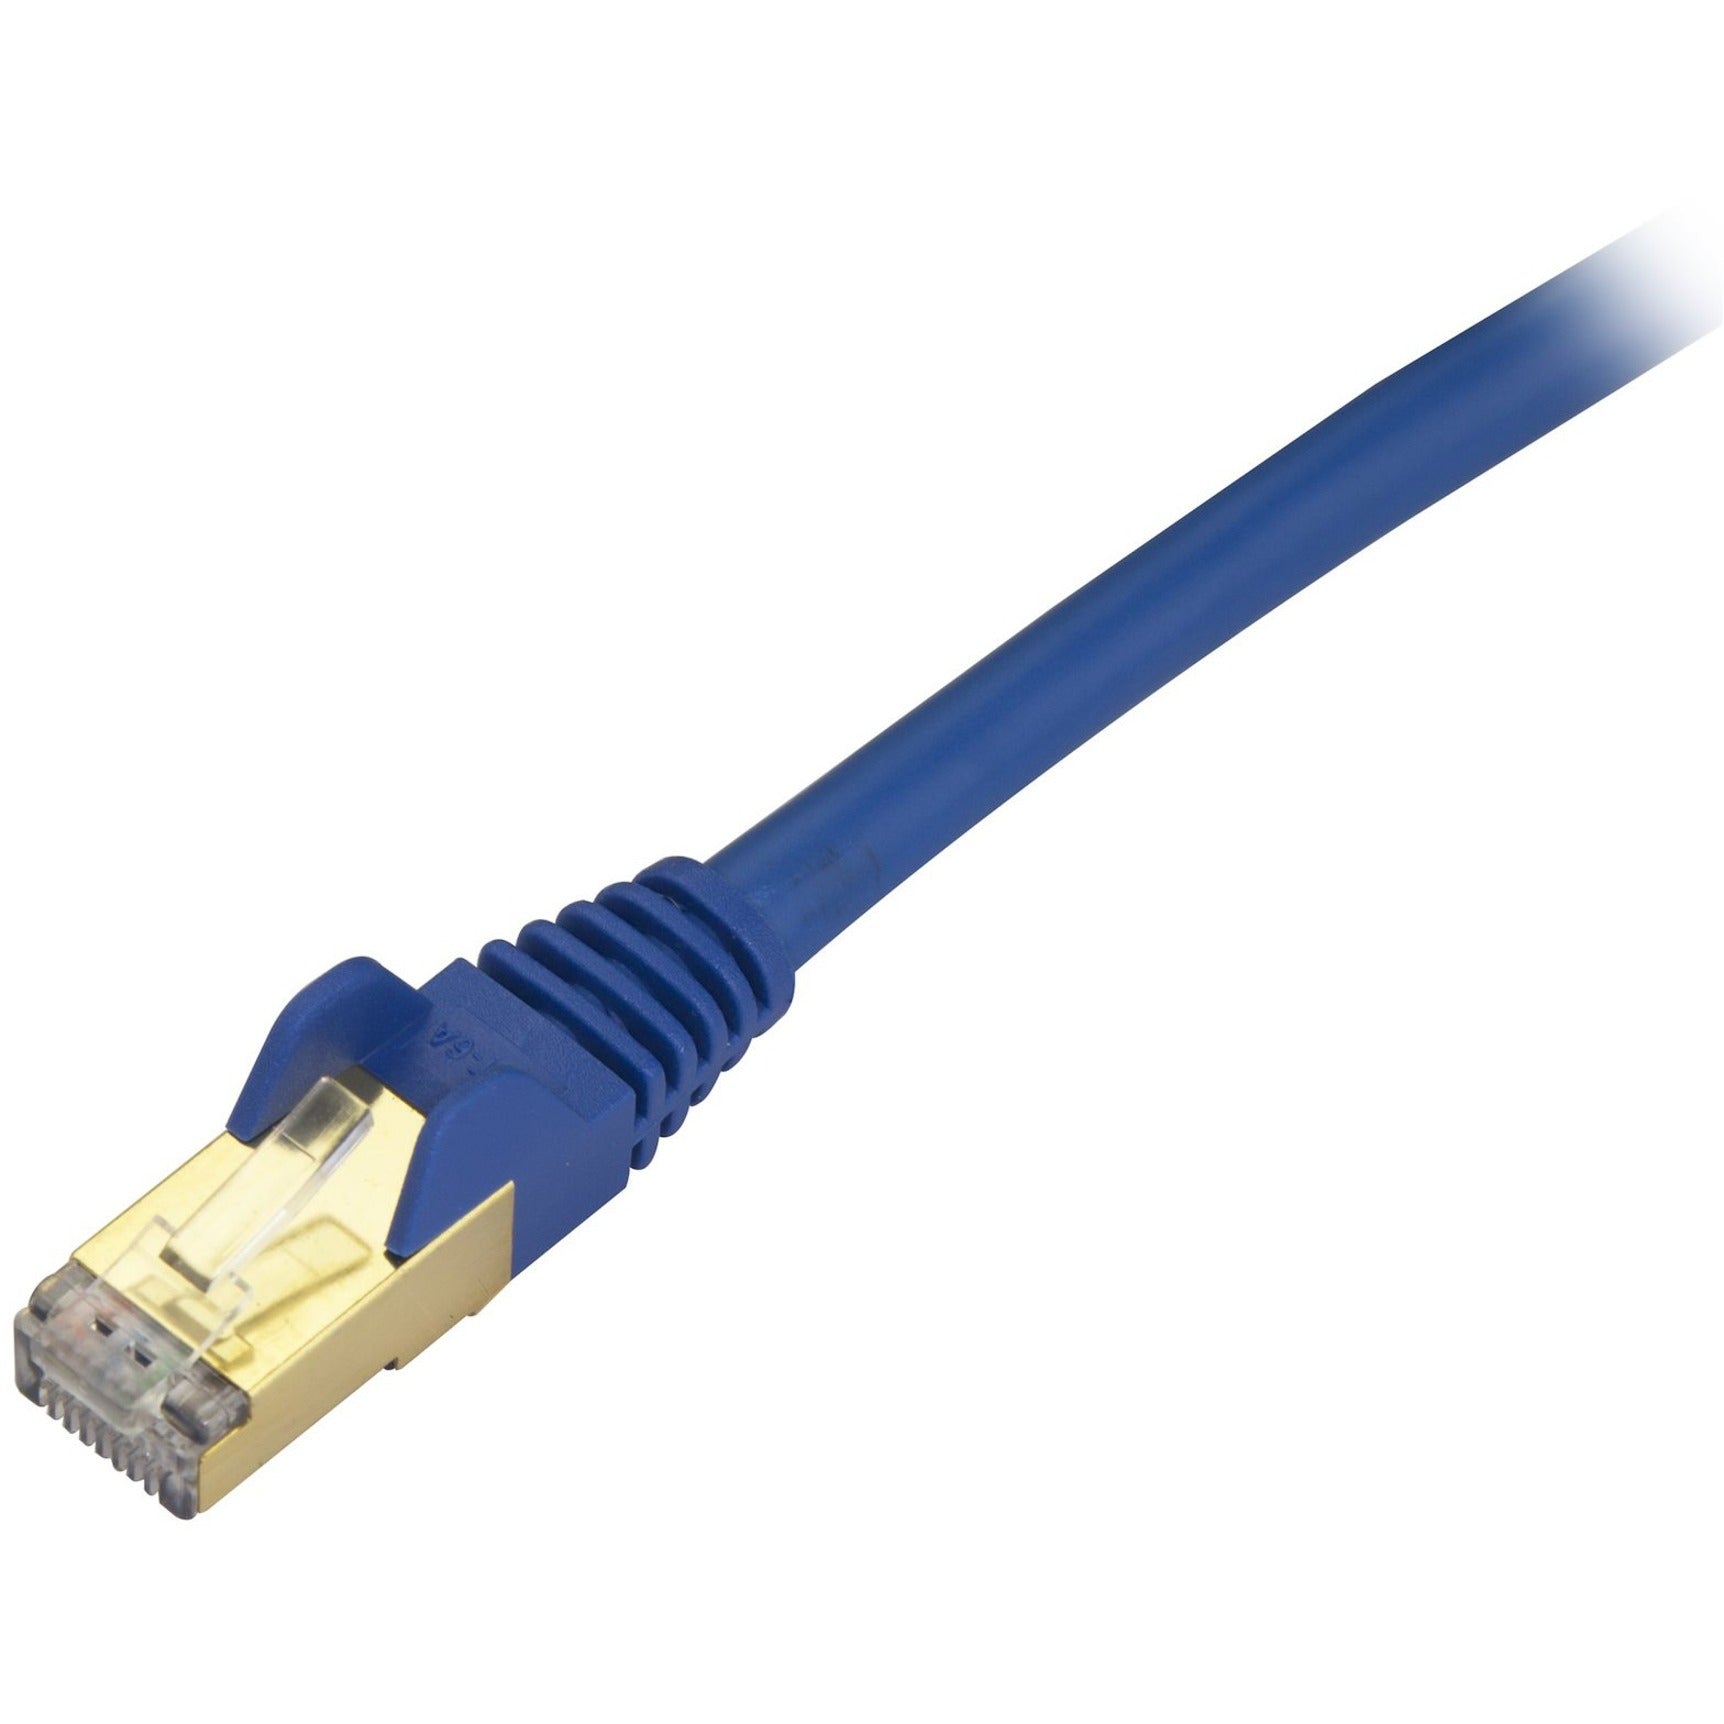 StarTech.com C6ASPAT15BL Cat6a Ethernet Patch Cable - Shielded (STP) - 15 ft., Blue, Long Ethernet Cord